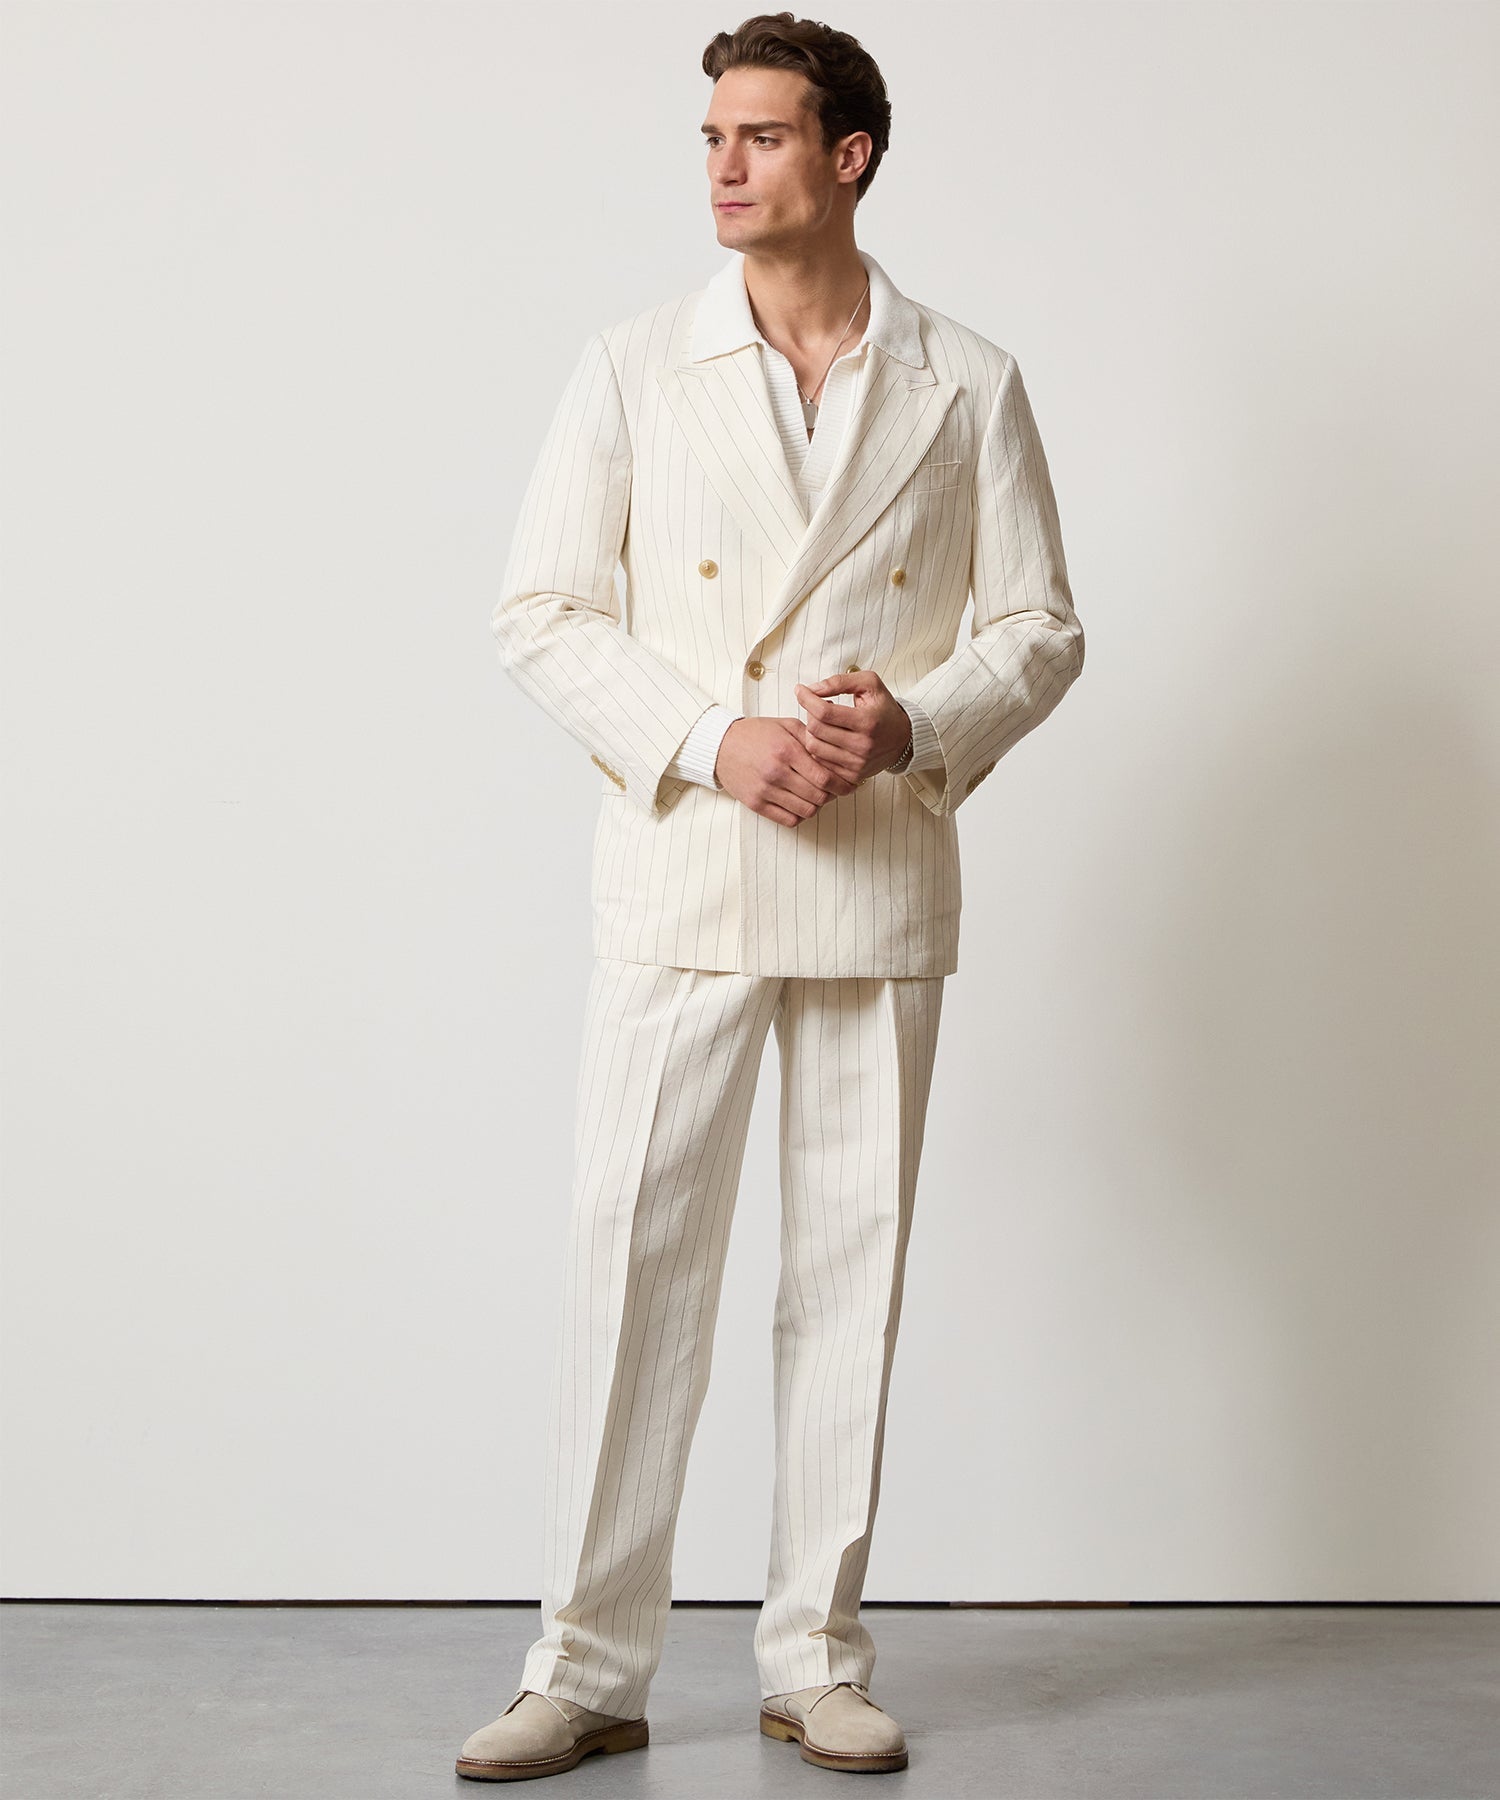 Italian Linen Wythe Jacket in White Pinstripe